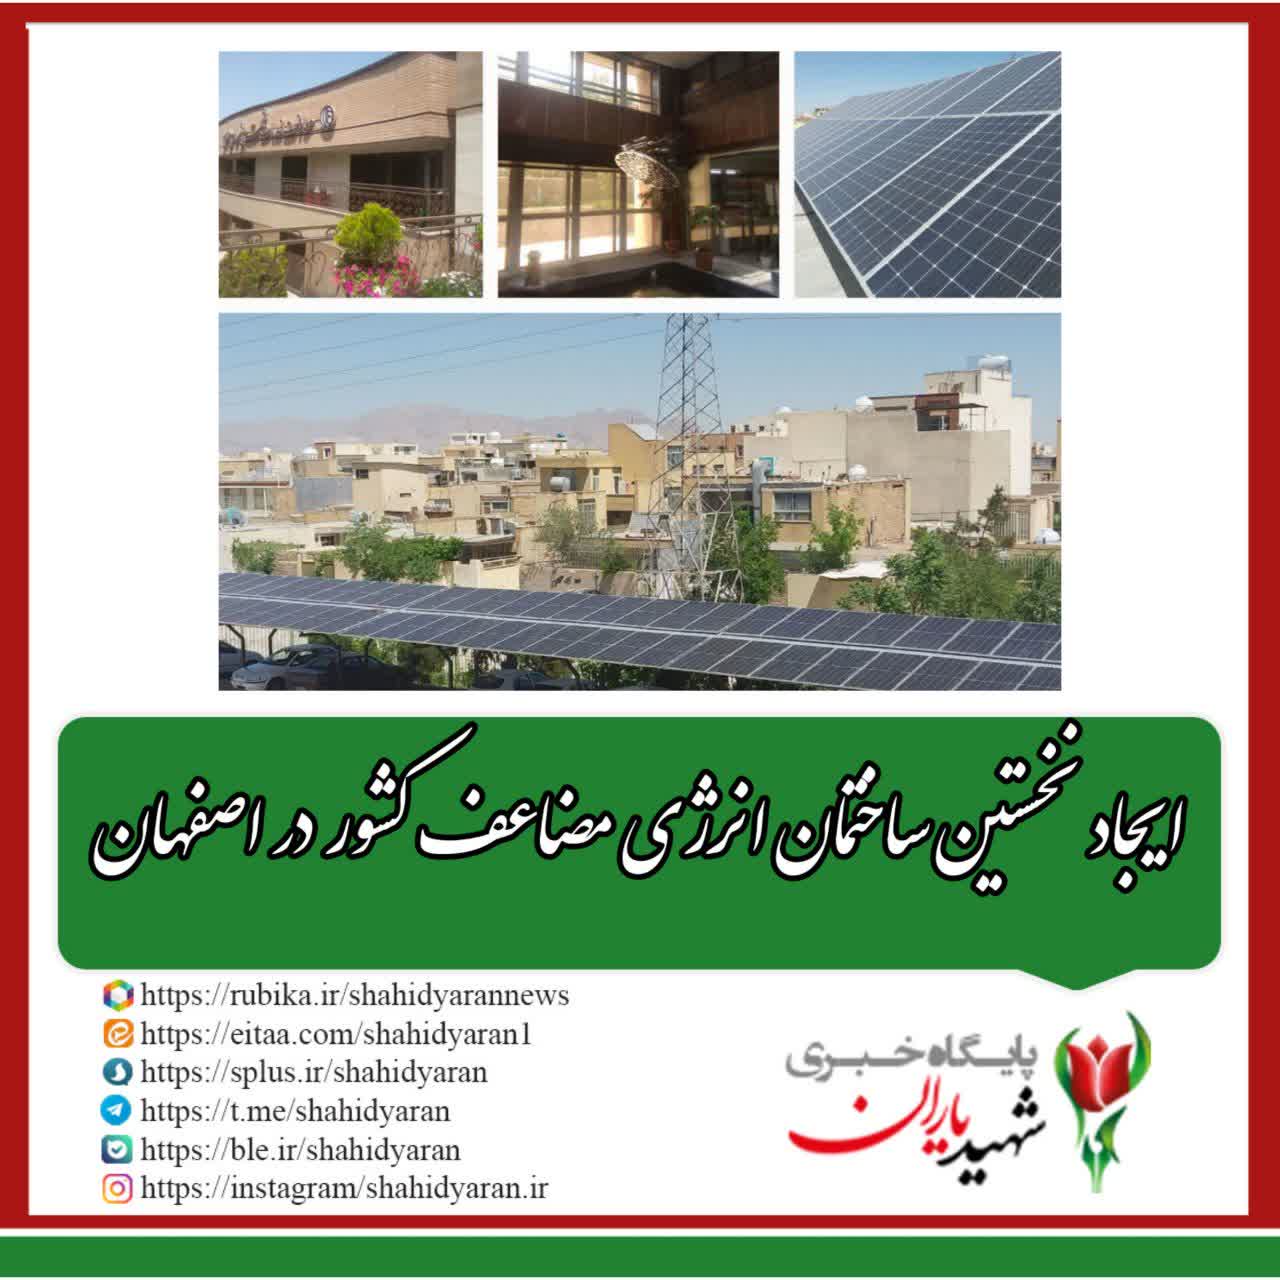 معاون محیط زیست و خدمات شهری شهرداری اصفهان خبر داد: